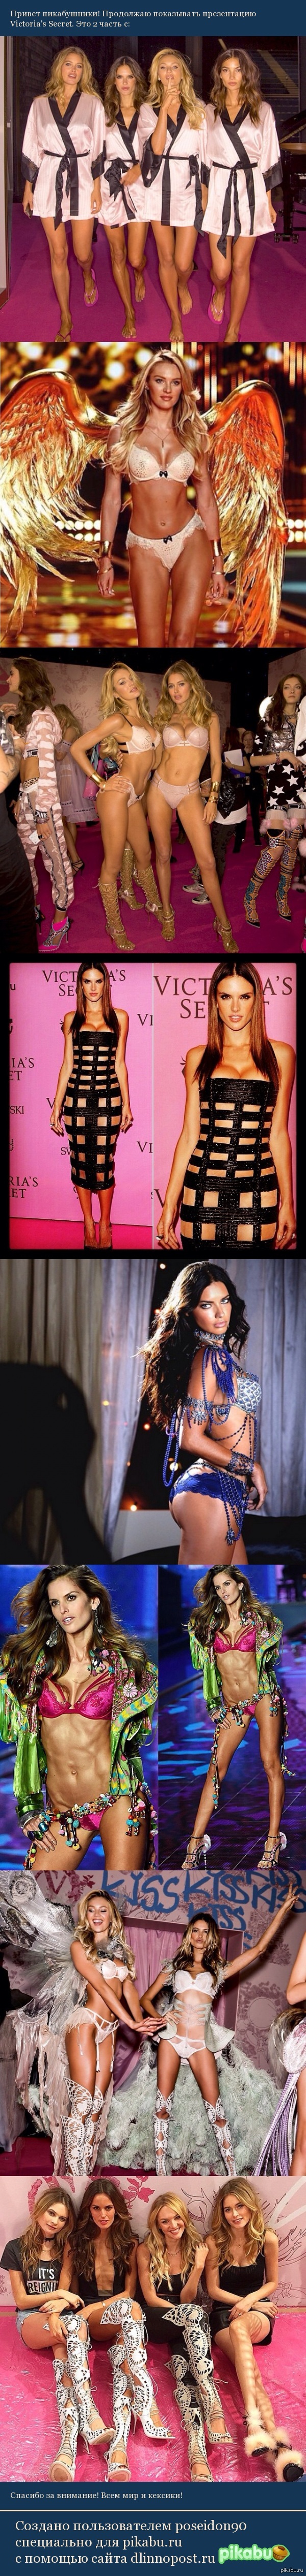 Victoria's Secret fashion show. part 2 - NSFW, Fashion, Victoria's Secret, Underwear, Girls, Sexuality, Models, Longpost